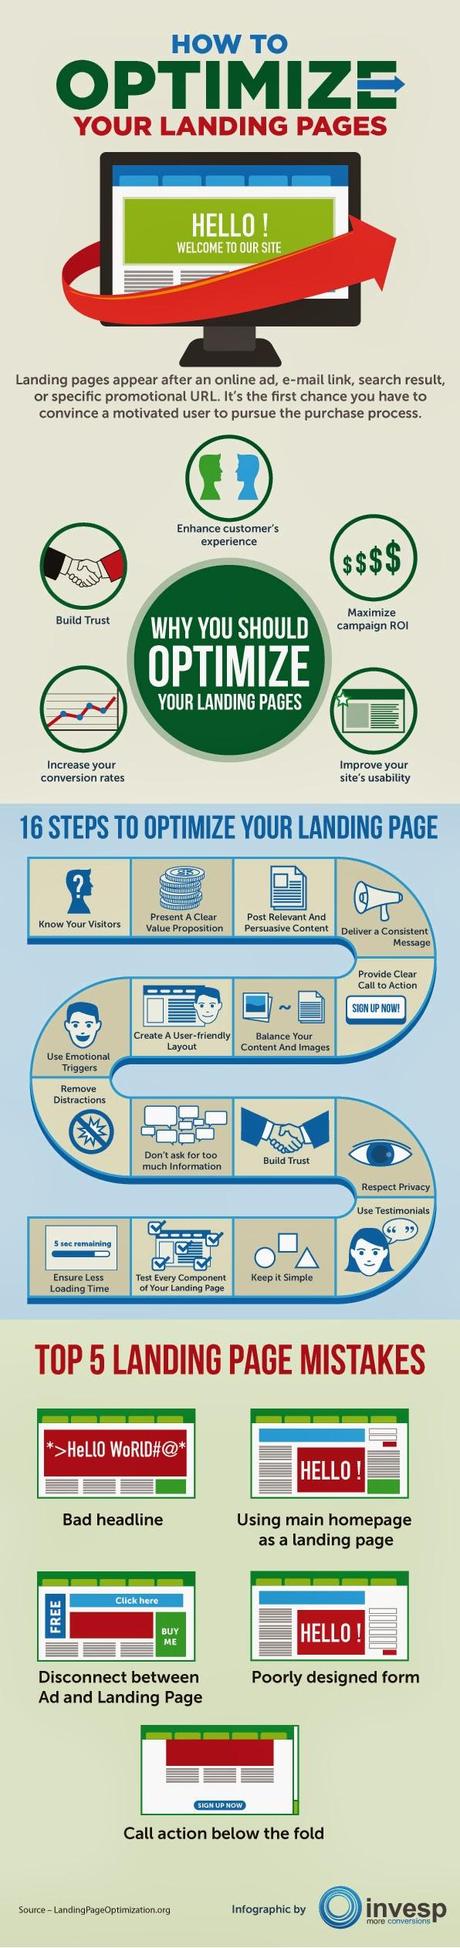 16 Pasos para optimizar una Landing Page [INFOGRAFÍA]